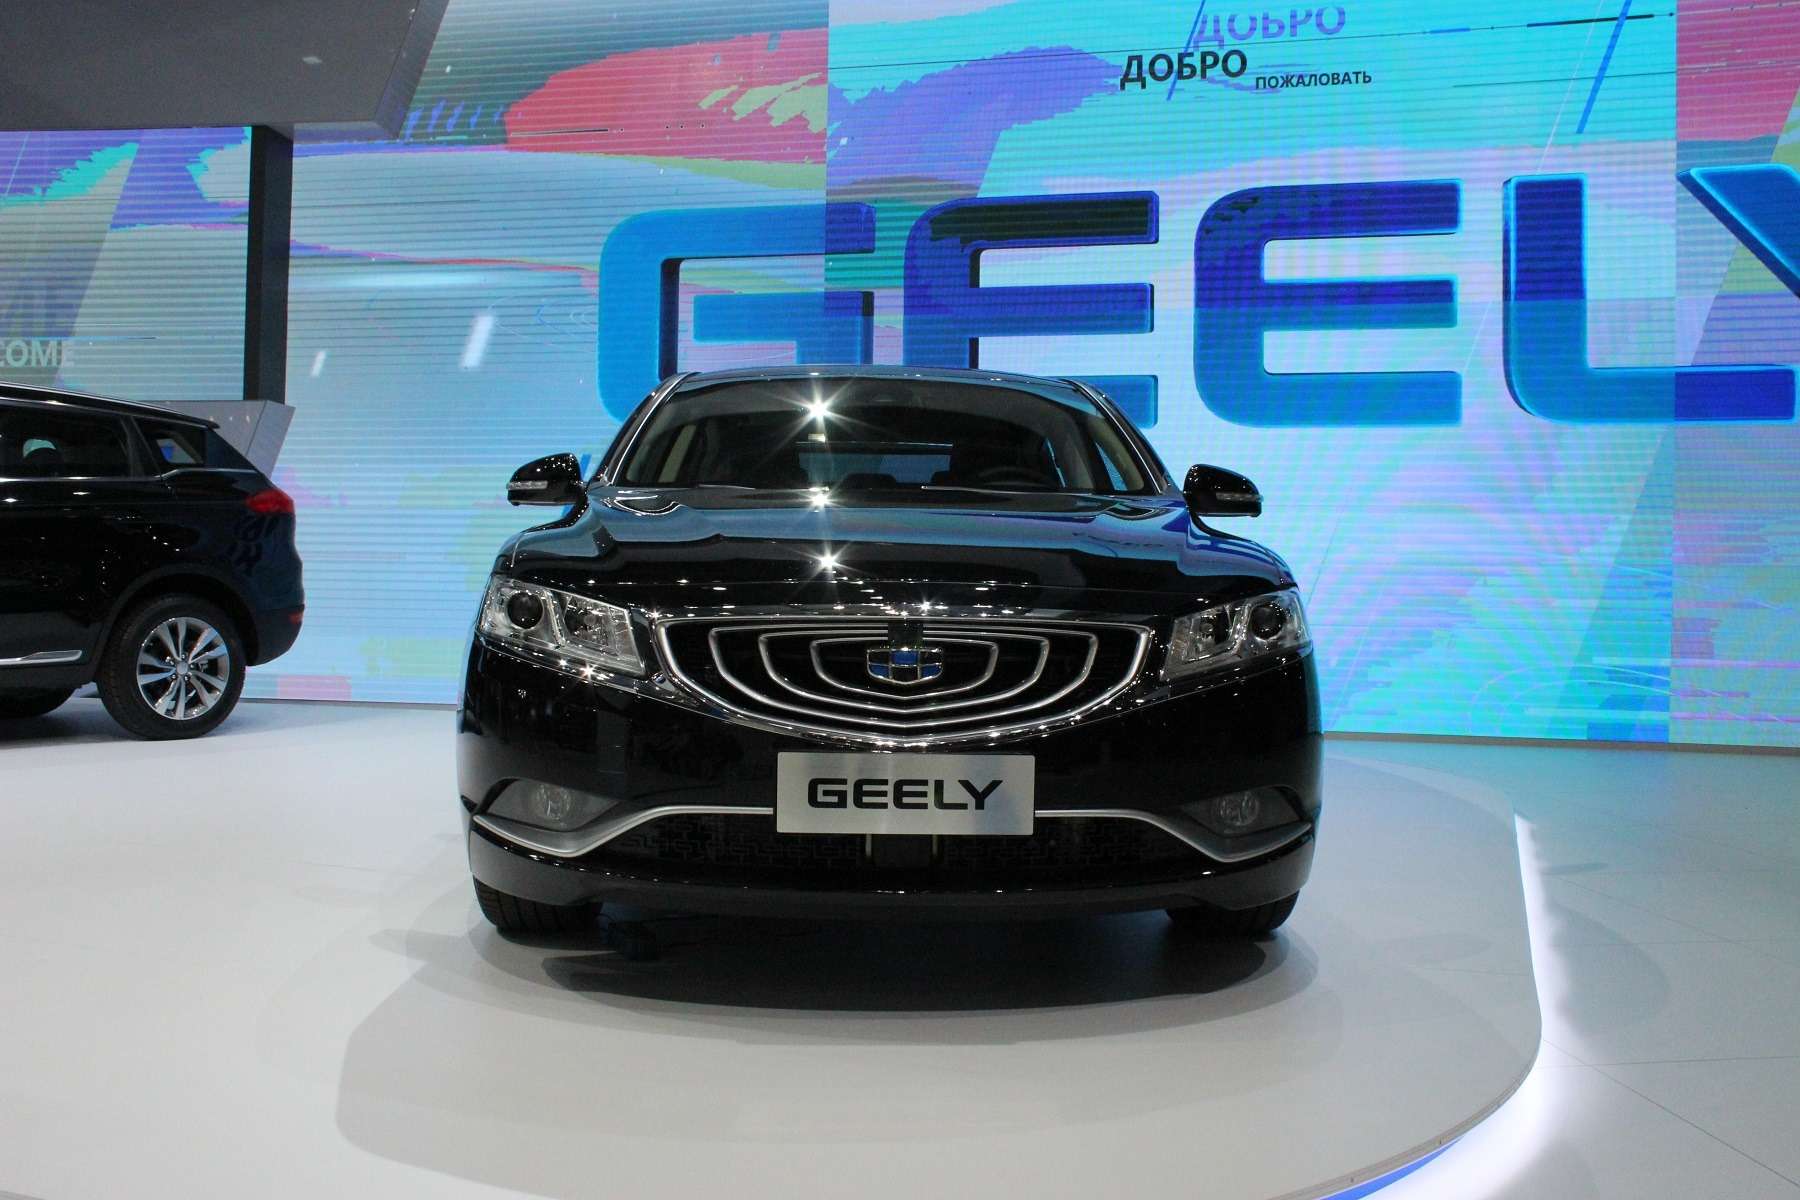 Великолепный странник: на Московском мотор-шоу показали седан Geely Emgrand GT — фото 623937